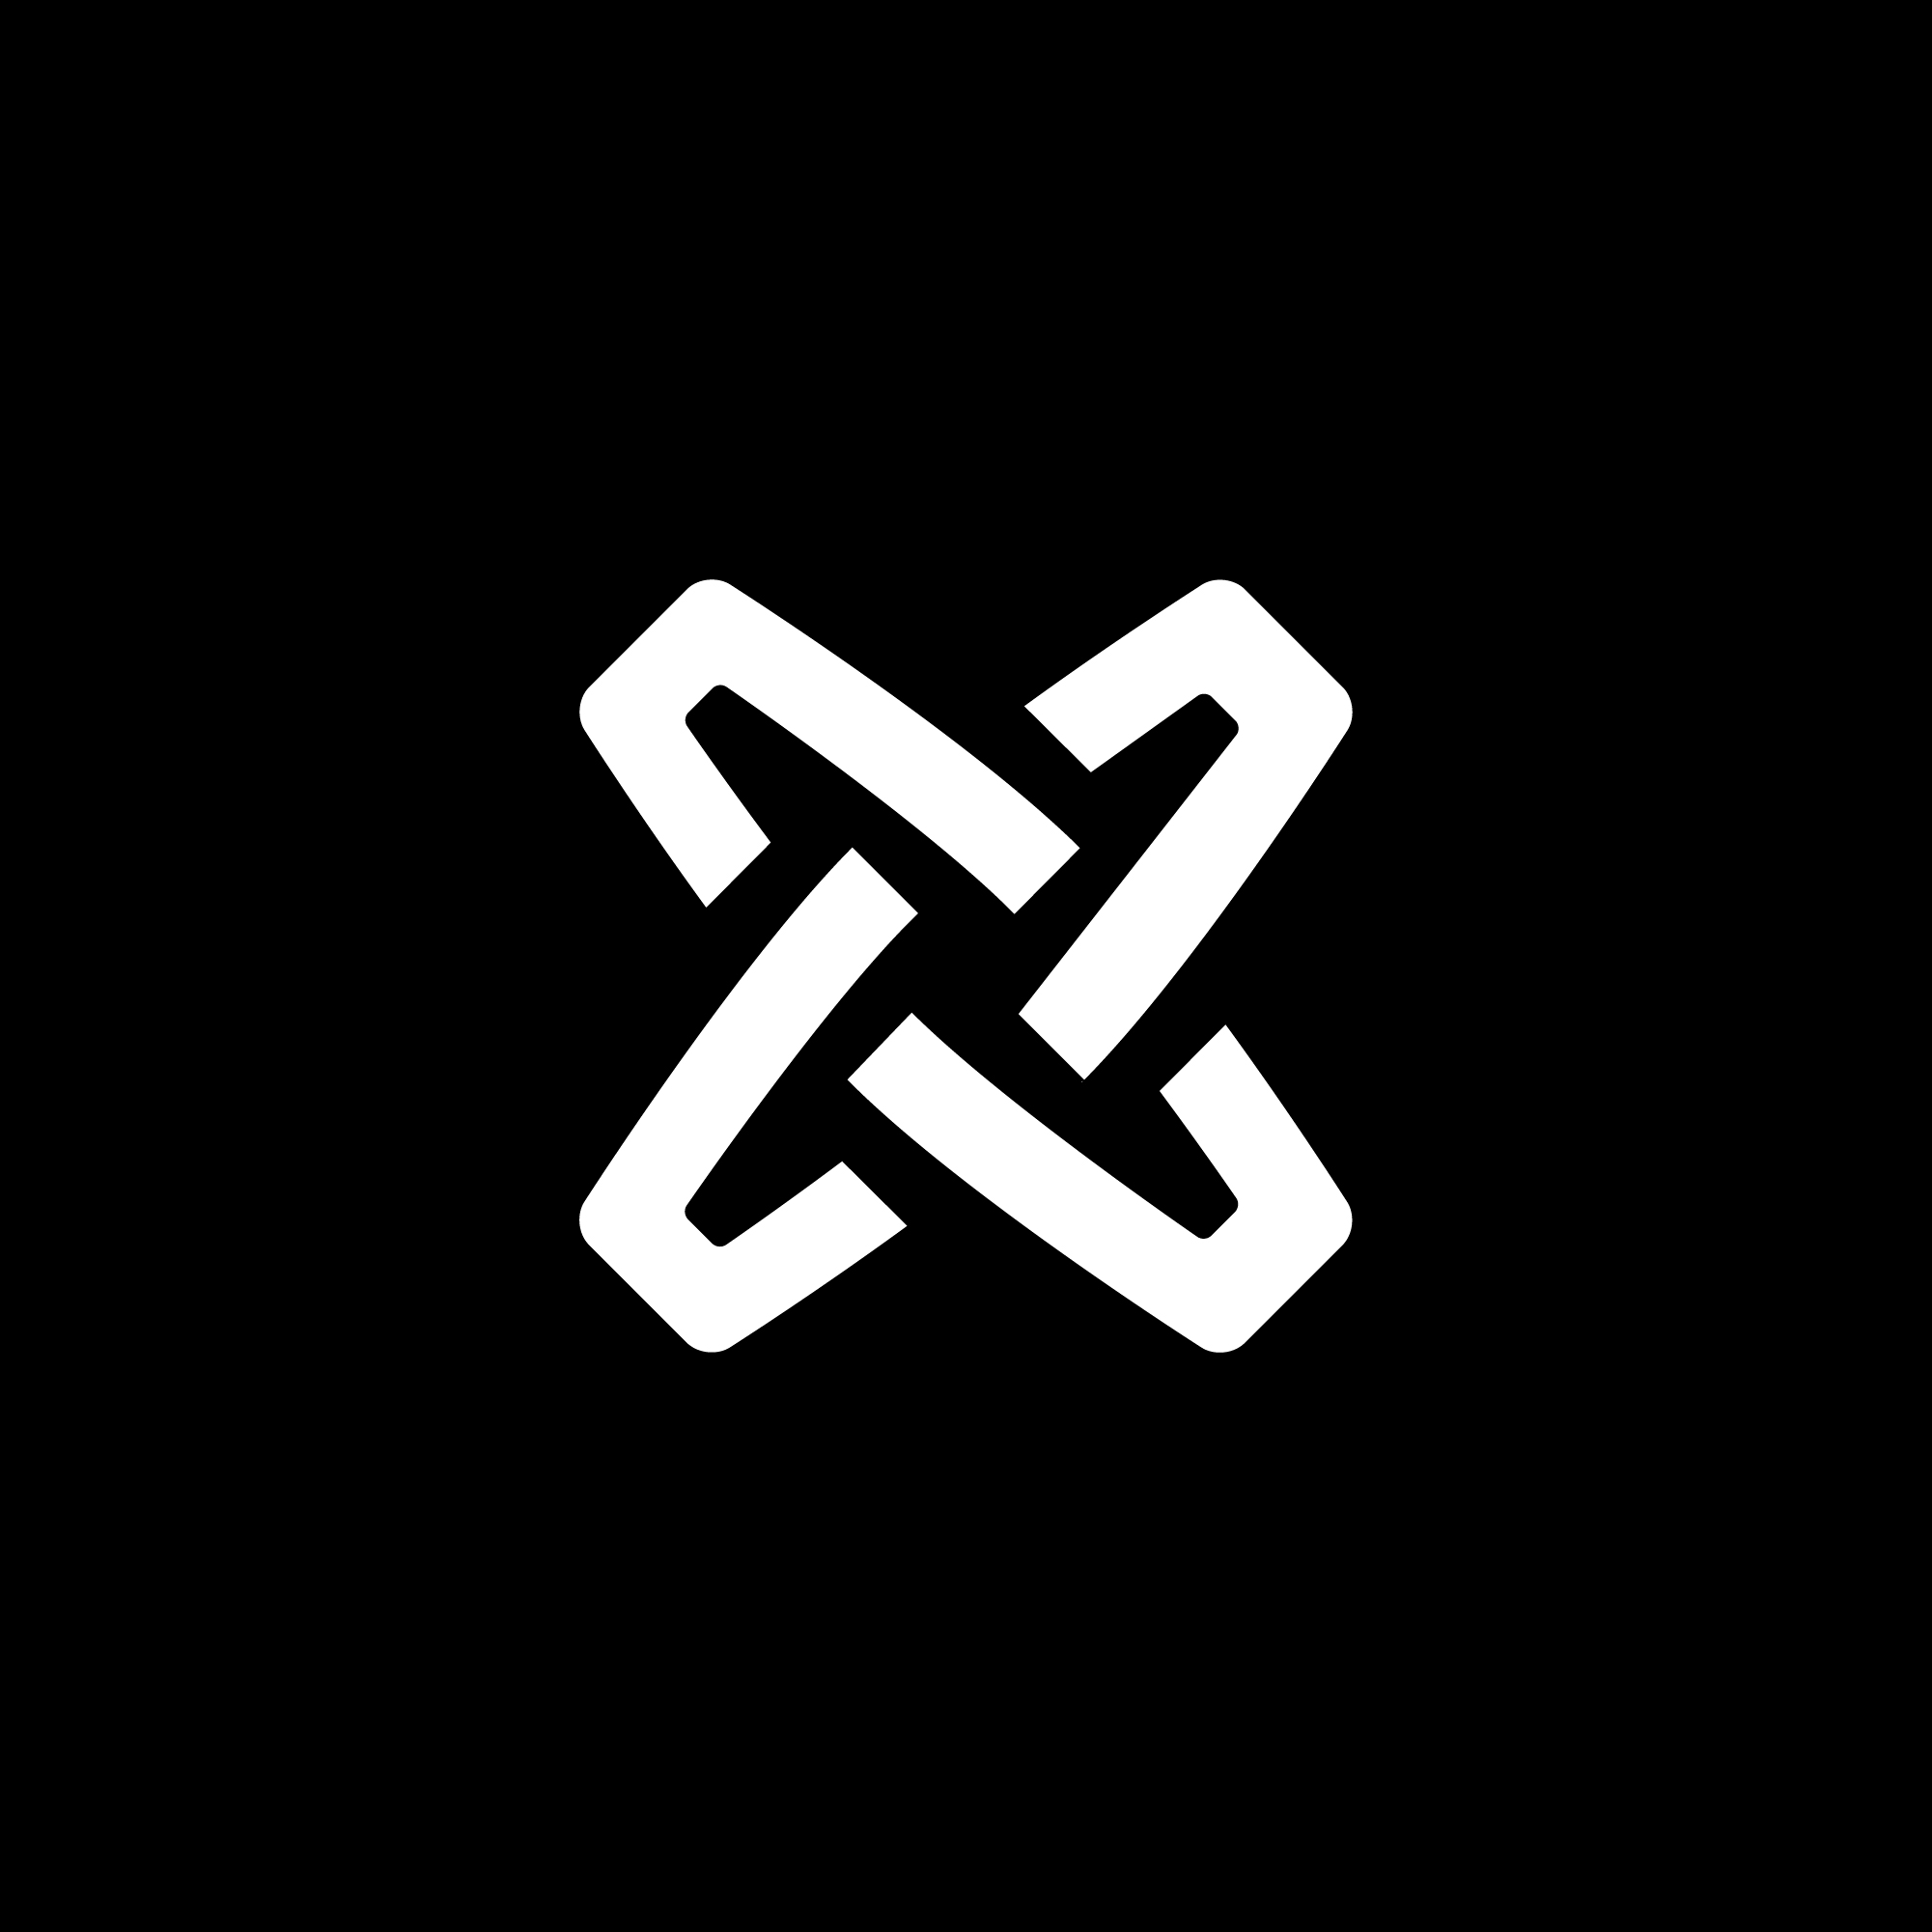 logo-design- black-white-minimalist-letter-shape-elegant